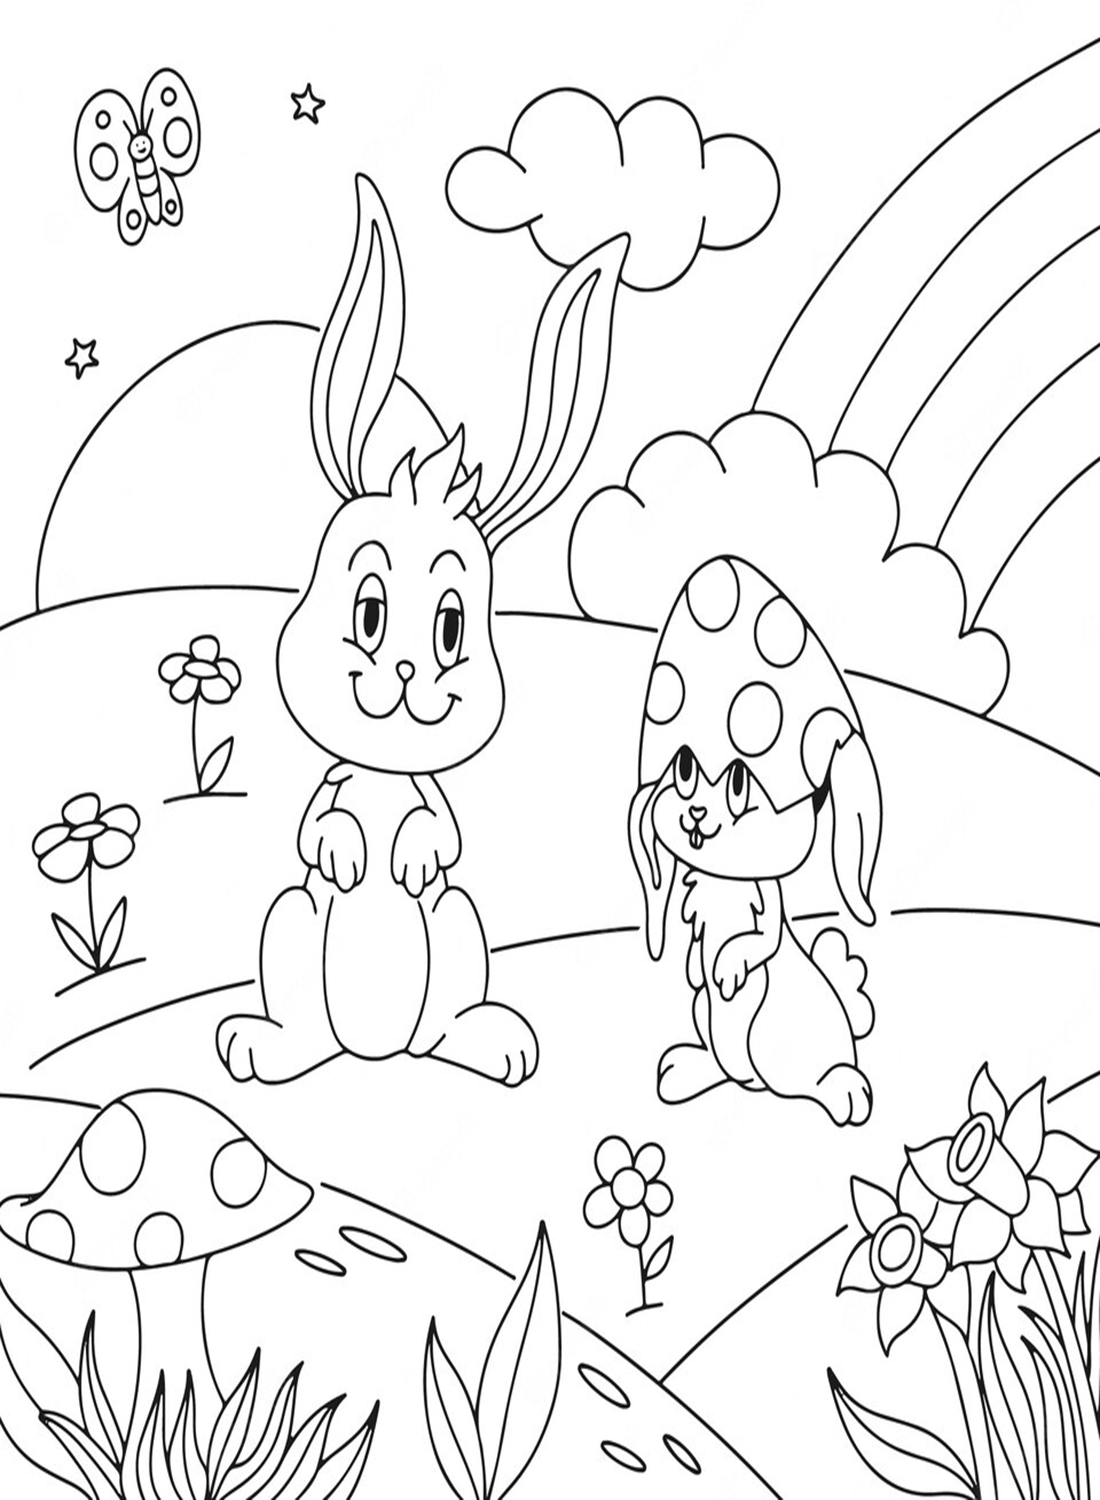 Lapin et ami de Rabbit